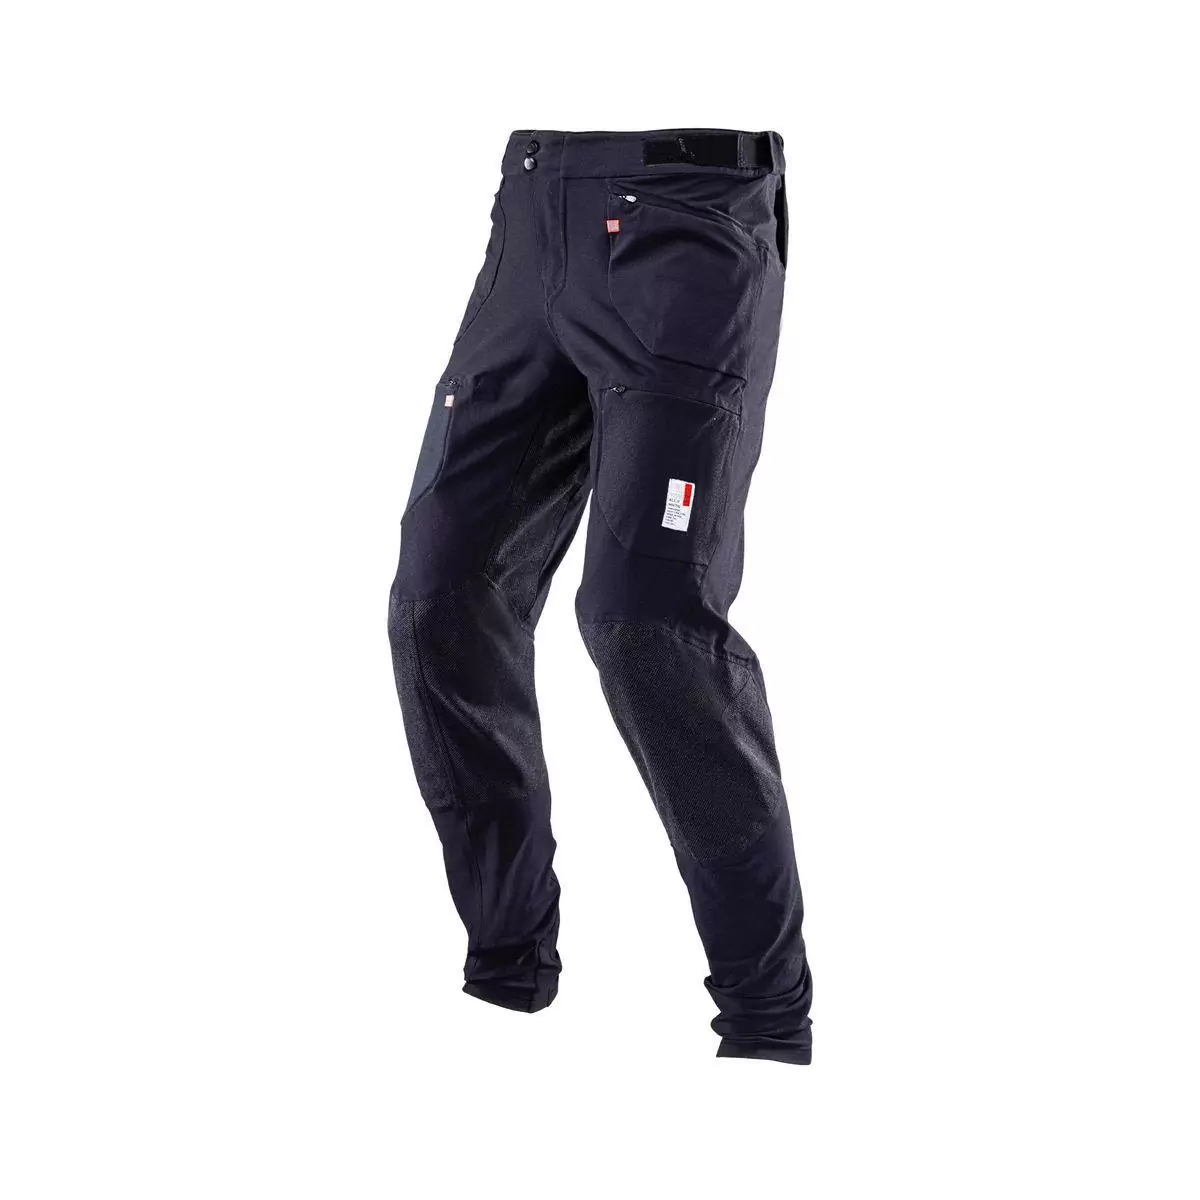 Pantalones MTB Allmtn 4.0 Largos Negro Talla XXXL - image